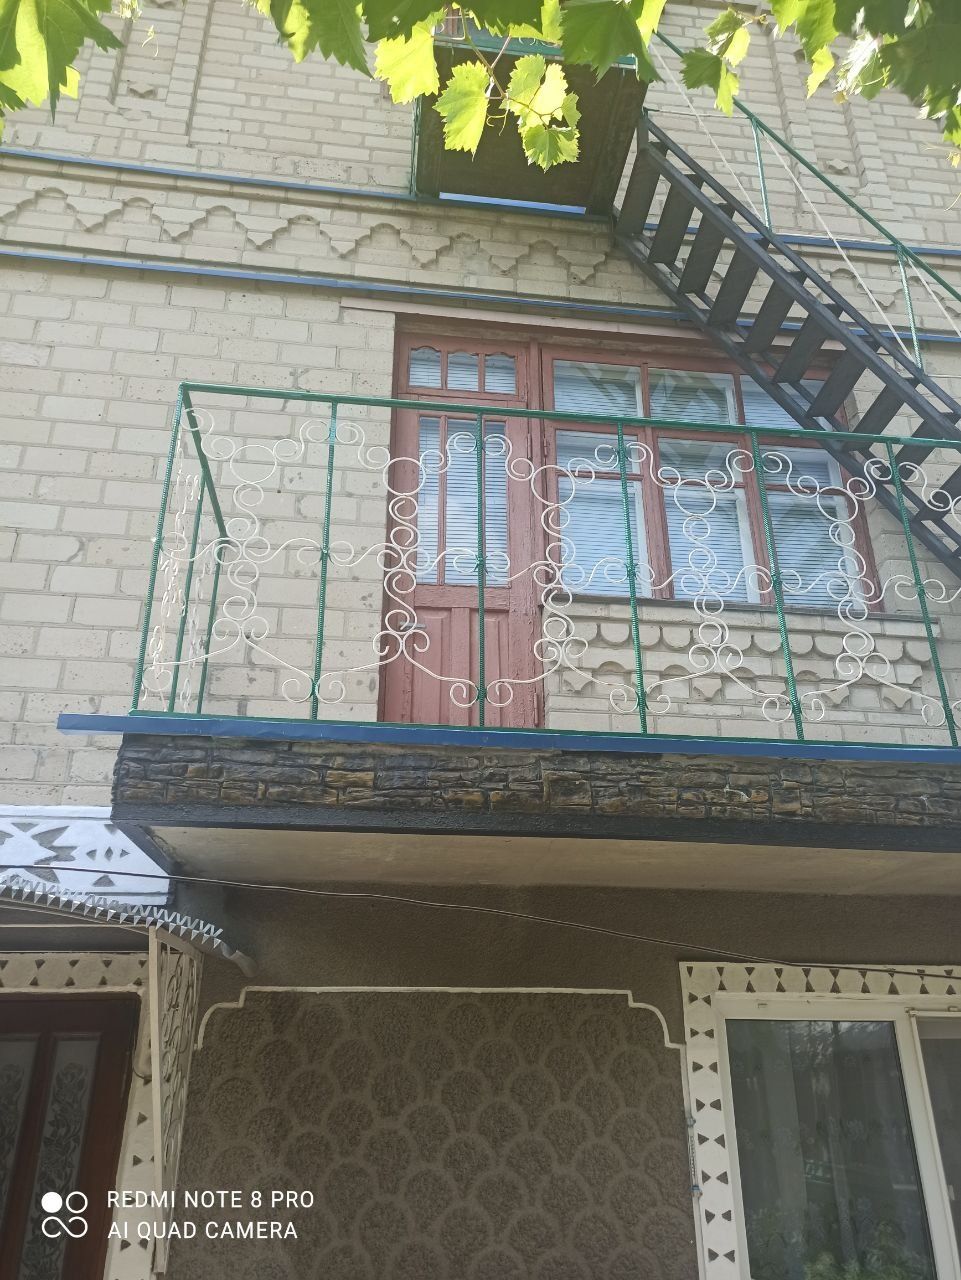 Продам ТРИ дома в Подольске (Котовске) в Одесской области!!!

Продам т